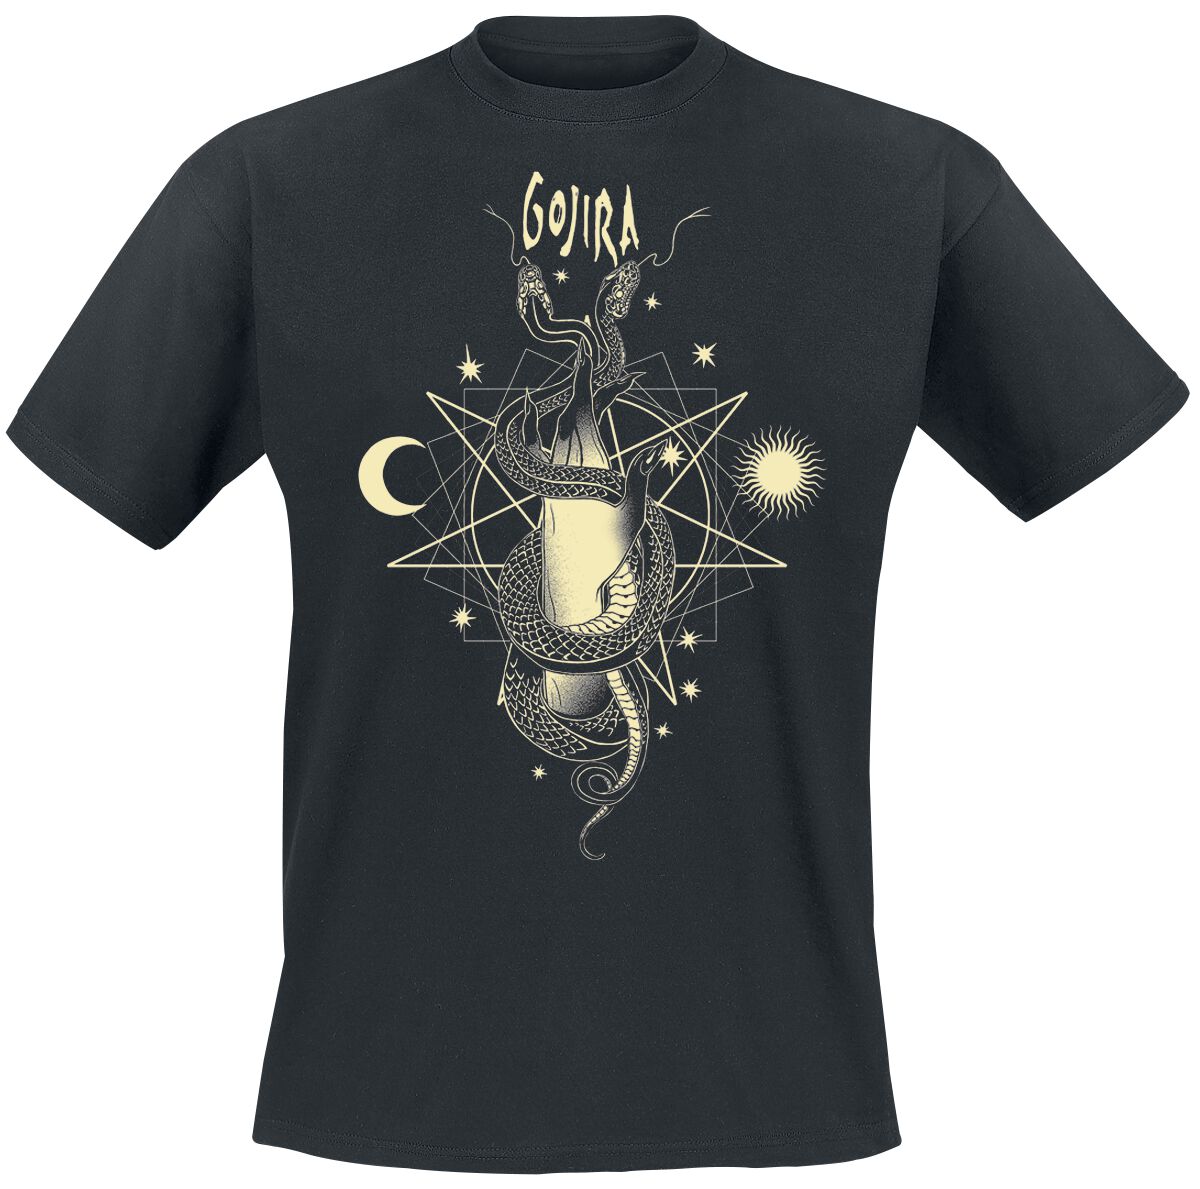 Gojira T-Shirt - Celestial Snakes - S bis XXL - für Männer - Größe L - schwarz  - Lizenziertes Merchandise!